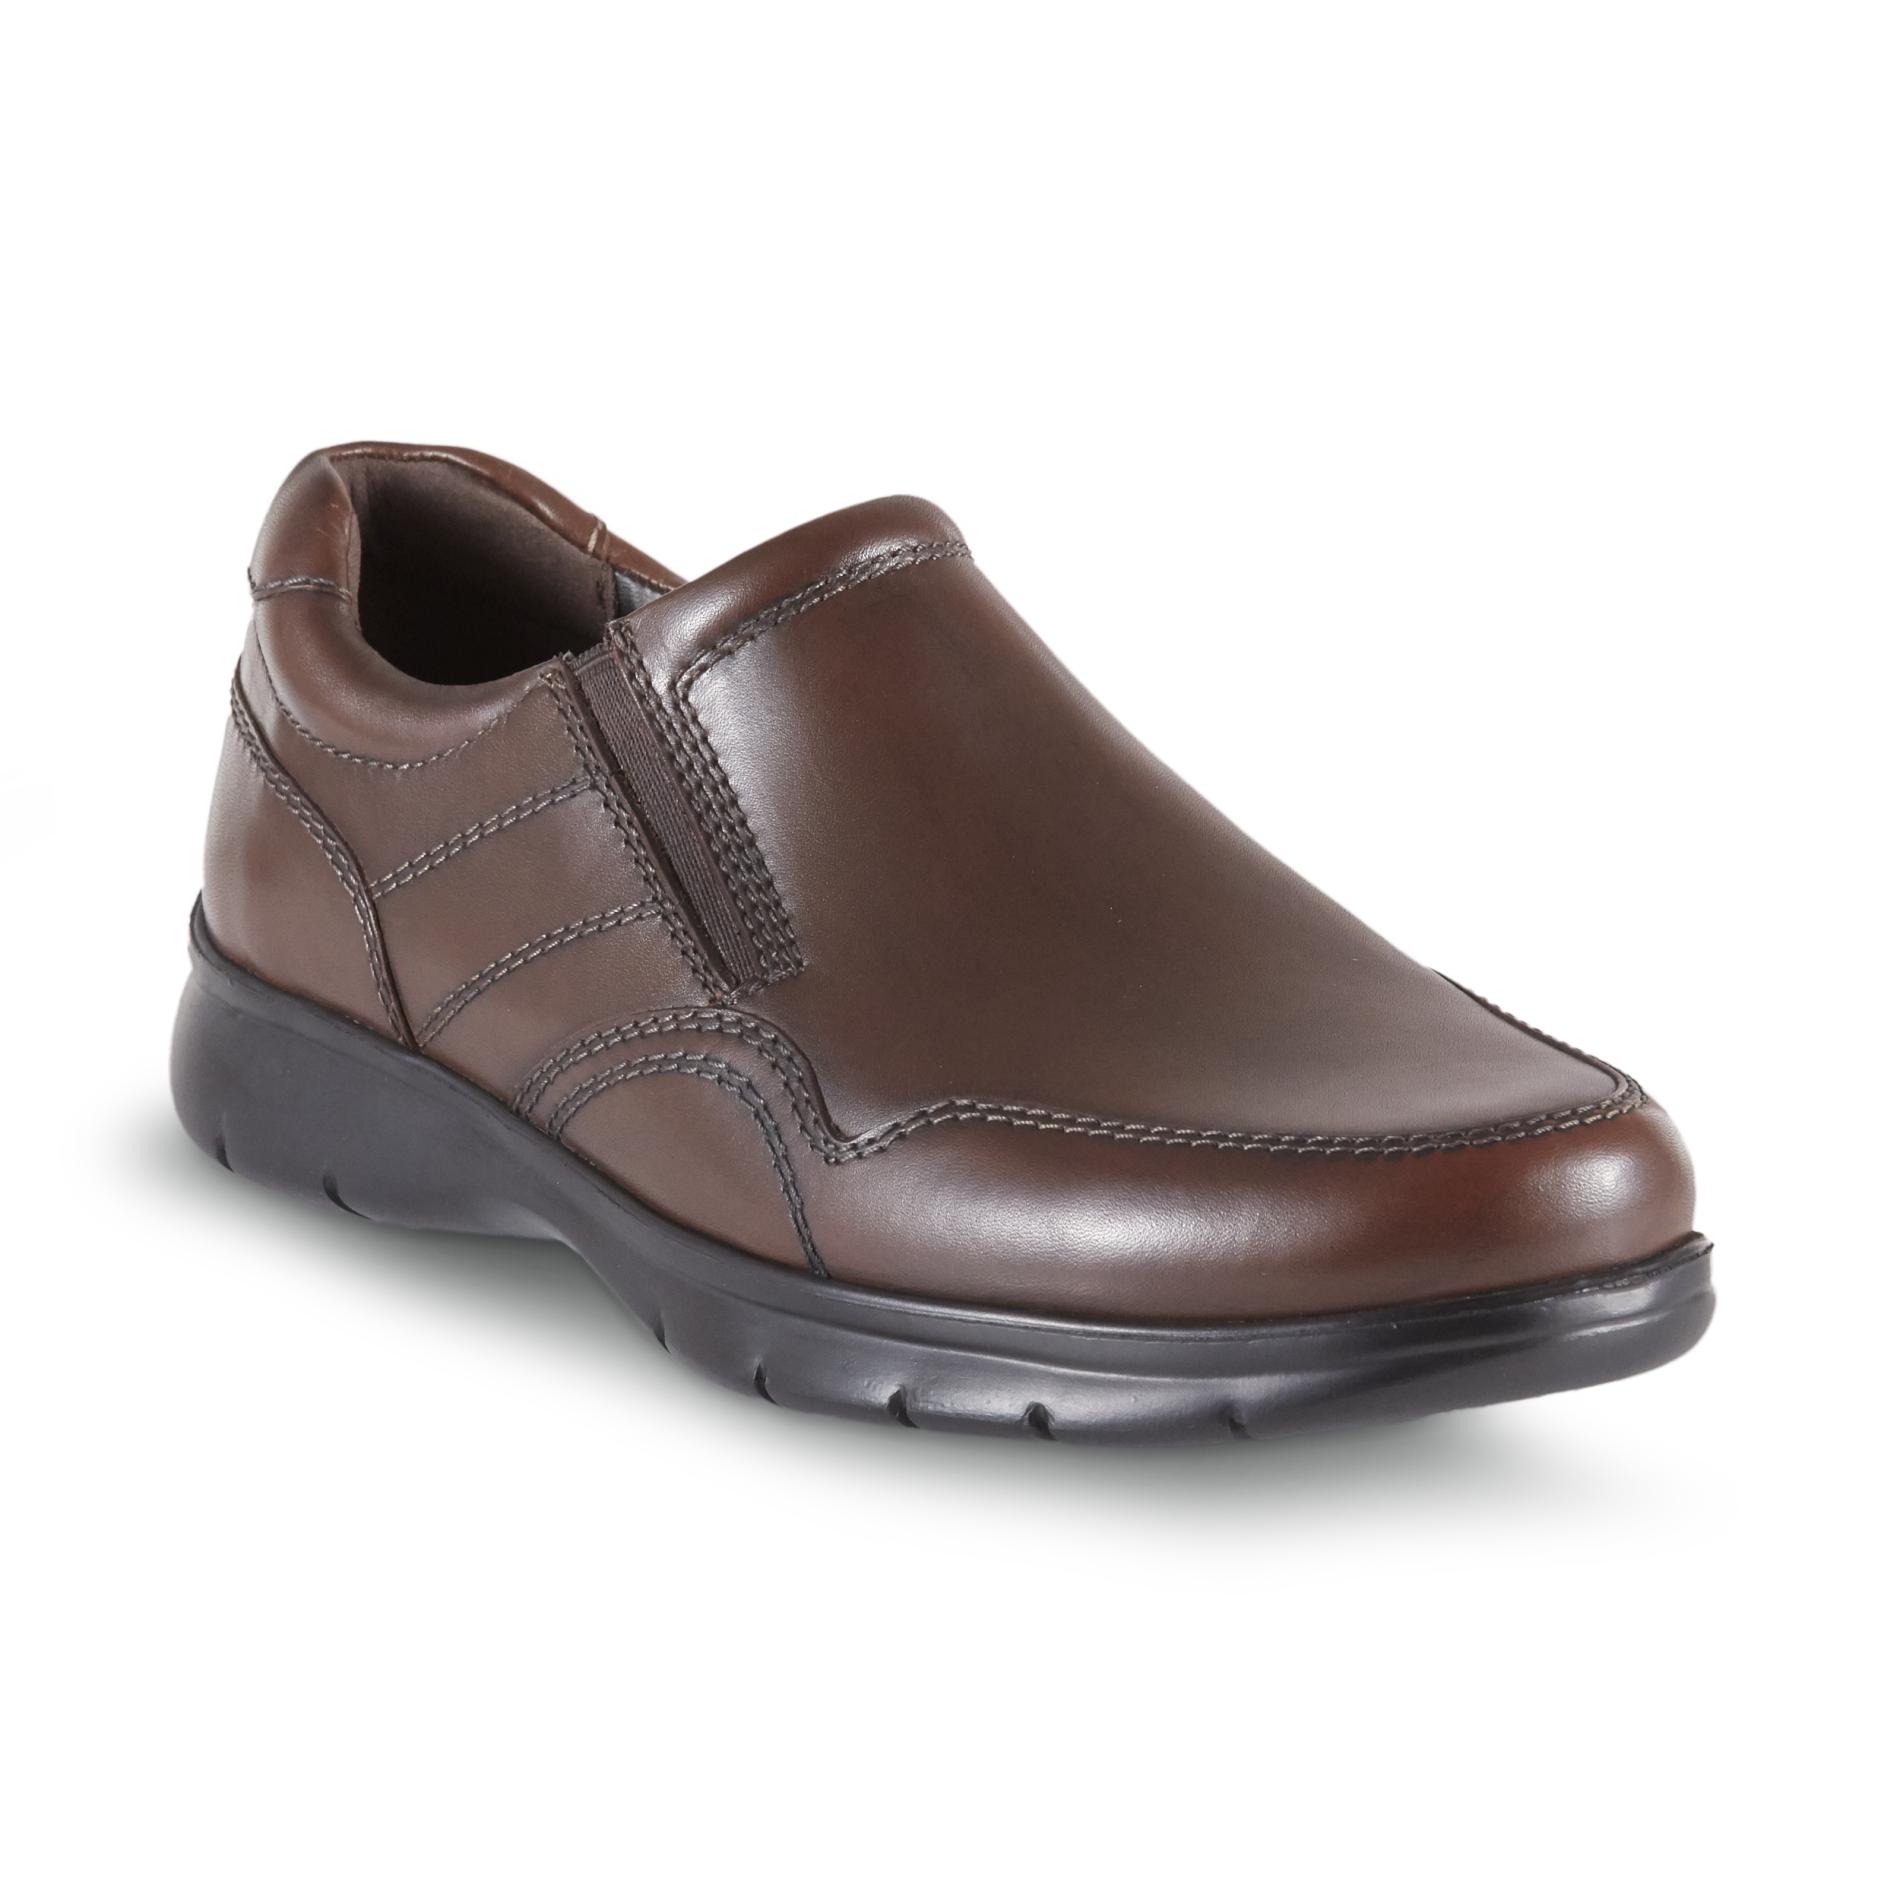 Wonderlite Men's Casual Shoes - Sears